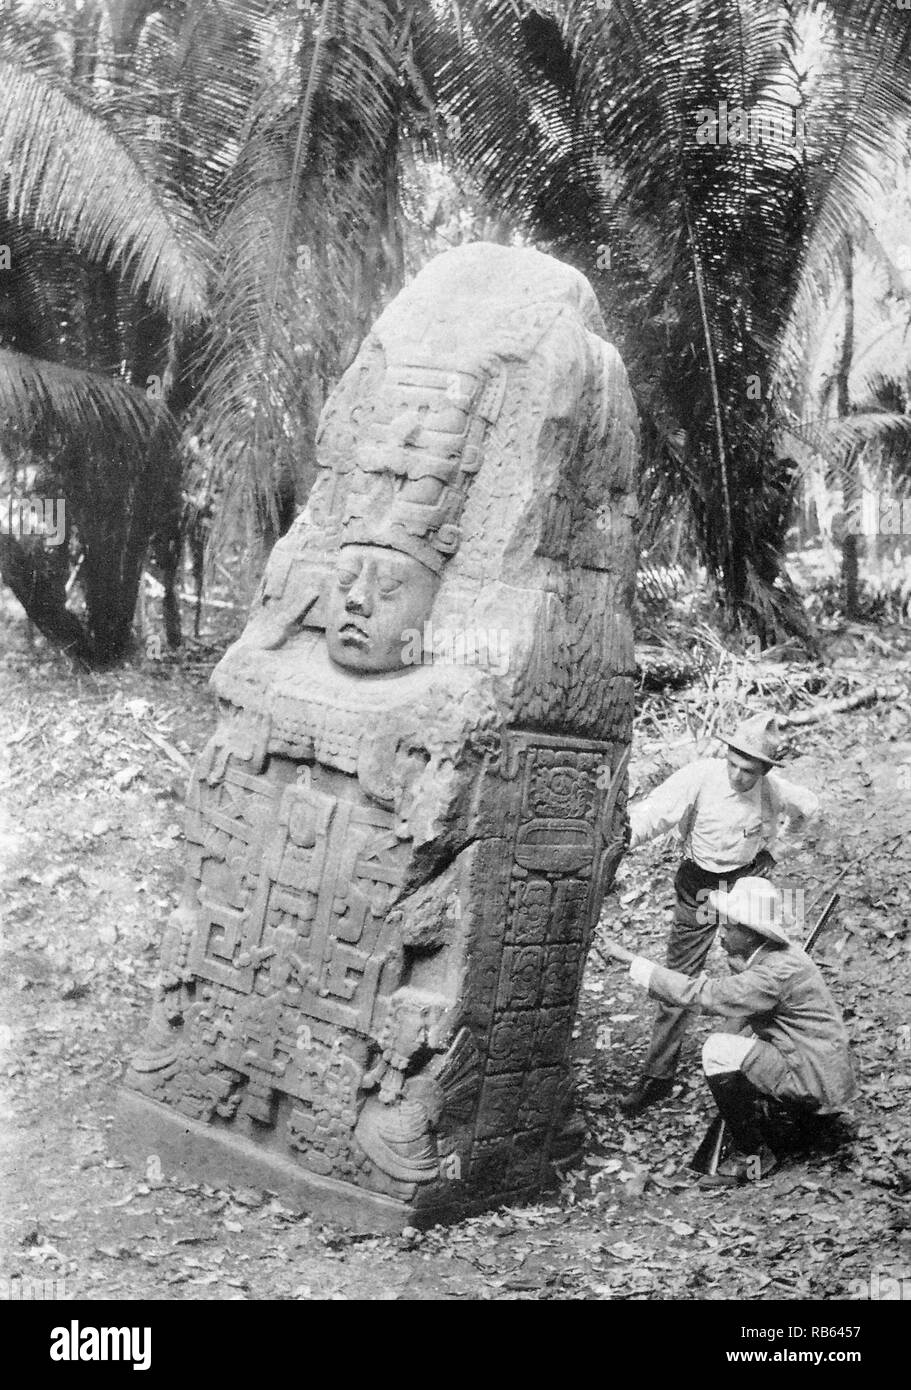 Fotografia di una stela di Quirigua. Guatemala. Stela per la regina di Quirigua. Sui lati sono visibili i geroglifici simili a quelli dei Maya manoscritti. Datata 900 AD (Photograpgh datata 1915). Foto Stock